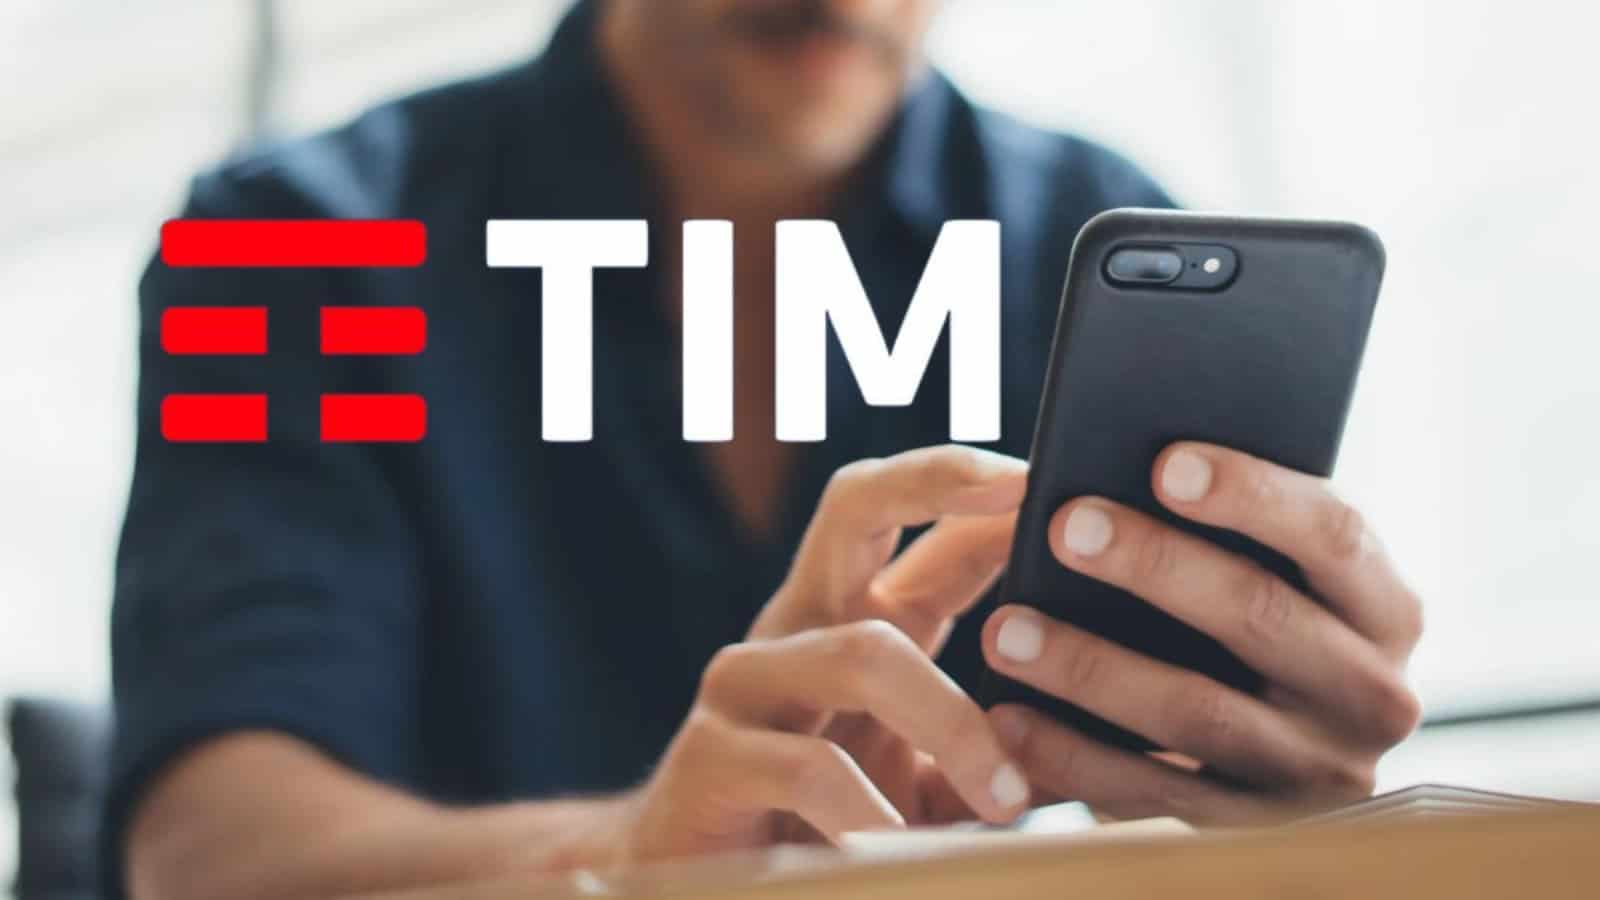 TIM offre fino a 300 GIGA con il 5G: le offerte sono gratis